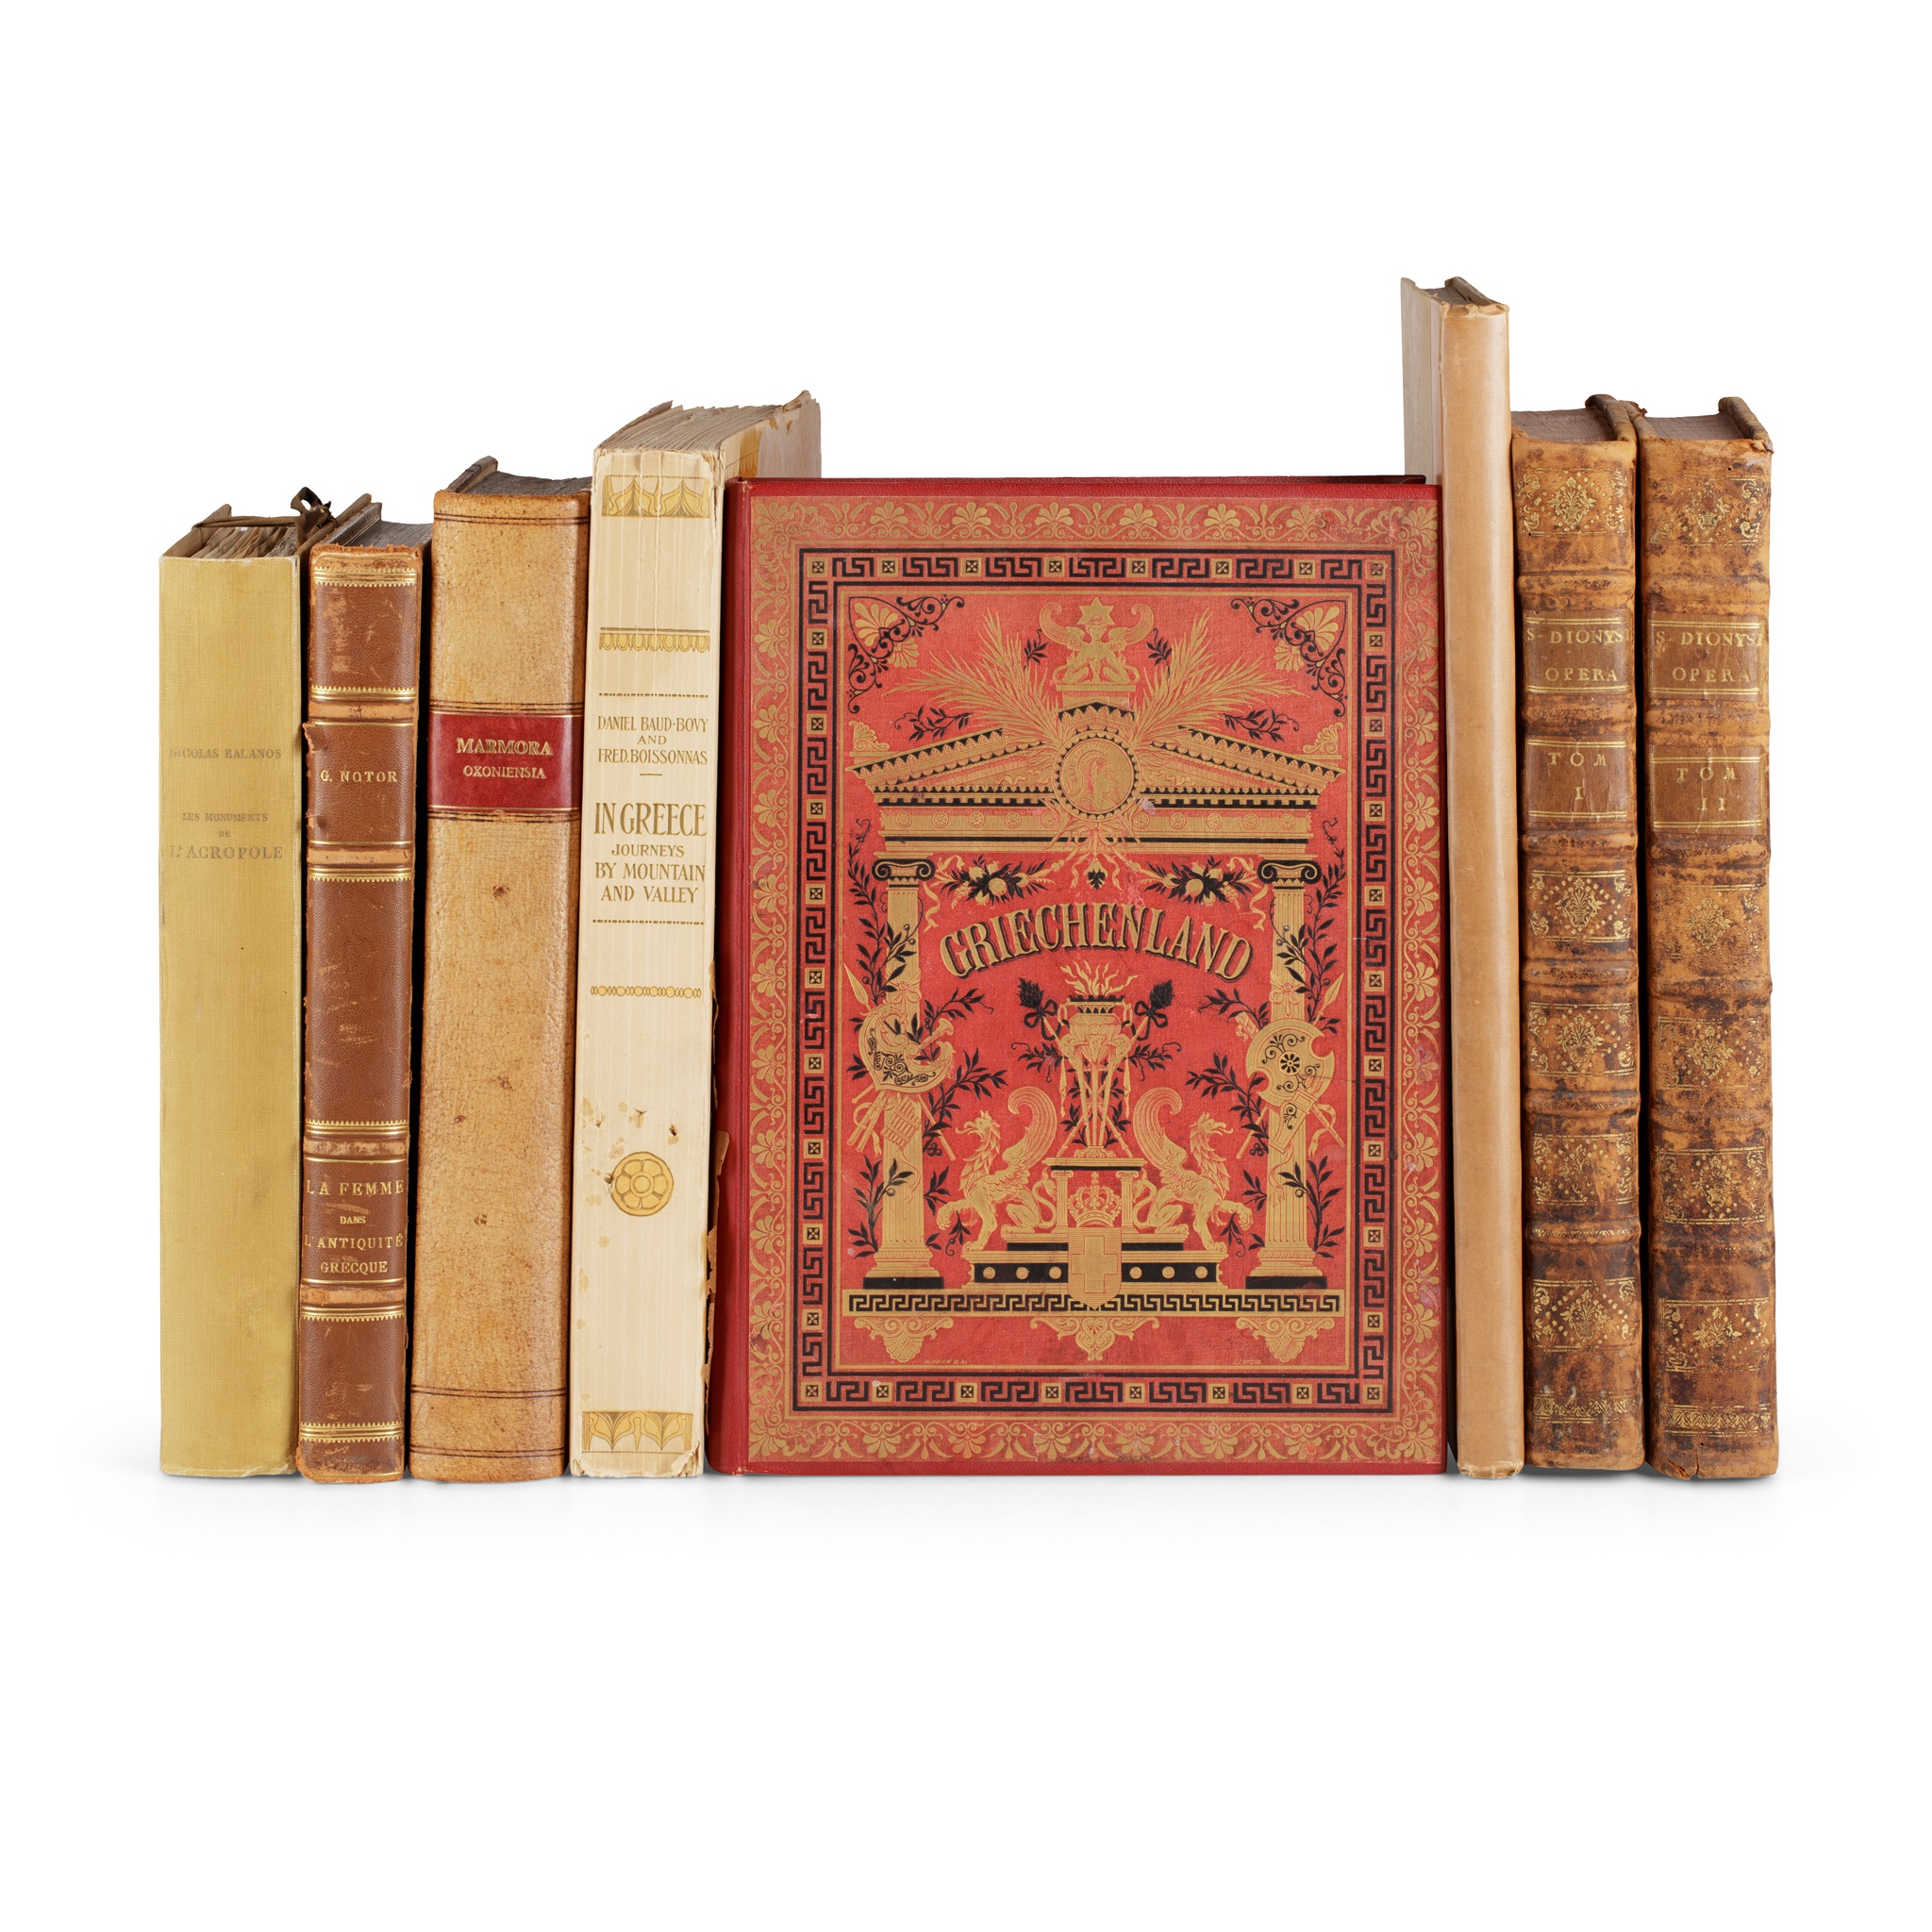 8 folio volumes, comprising [Maittaire, Michael]